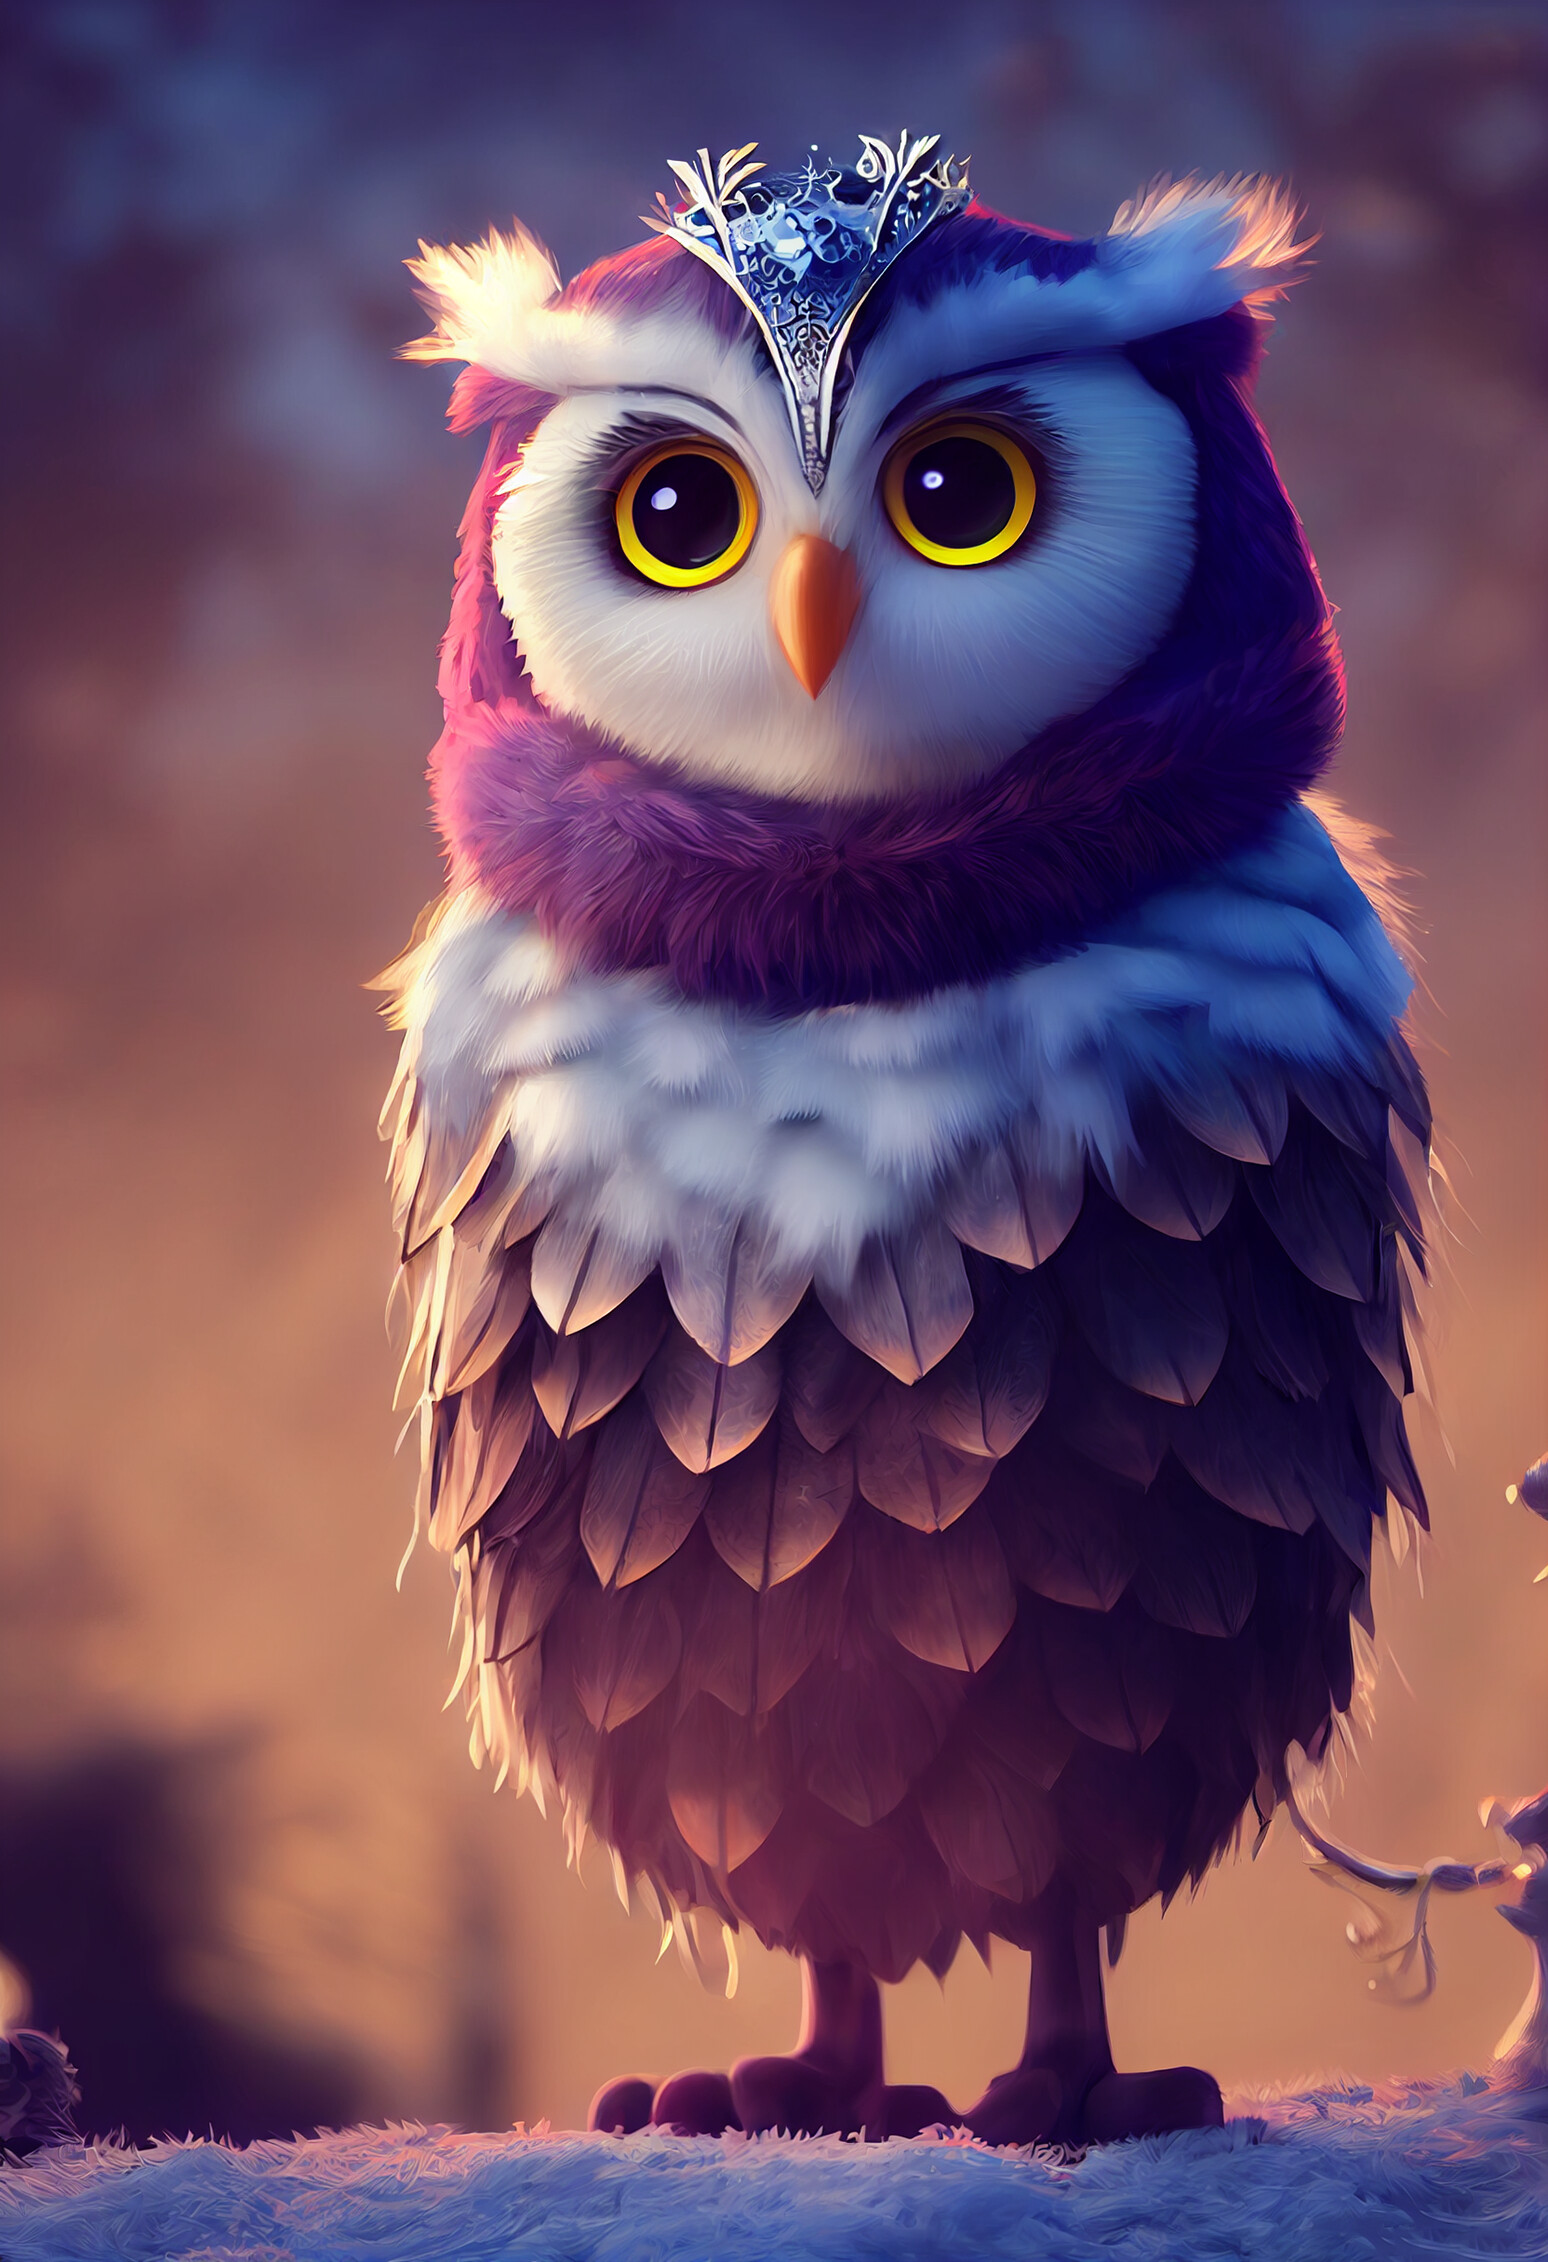 ArtStation - Cute 3D Owls Wearing Armor